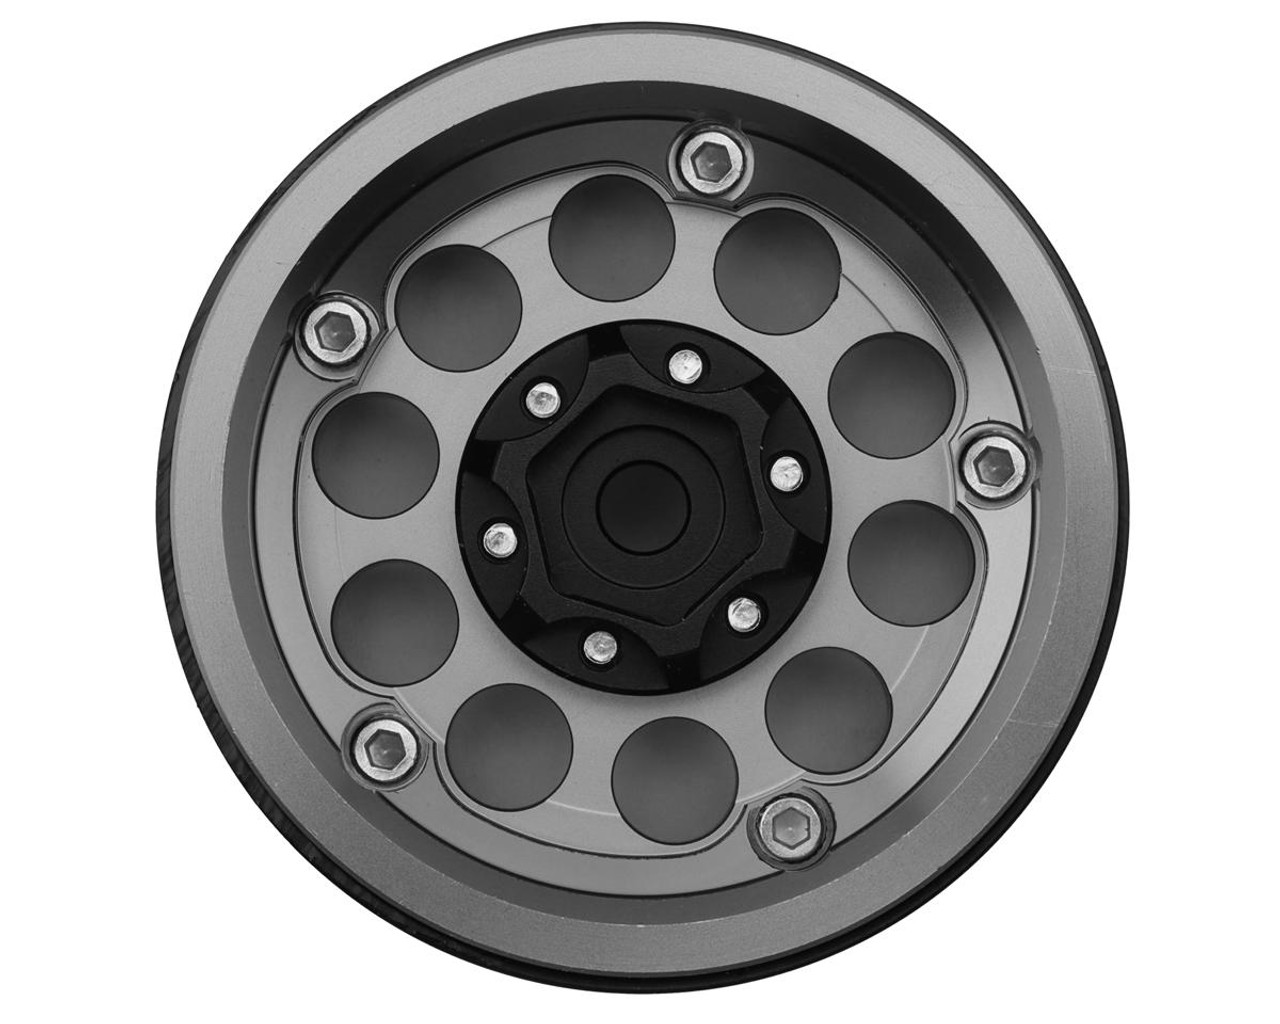 Treal Hobby Type F 1.9" 10-Hole Beadlock Wheels (Grey) (4)